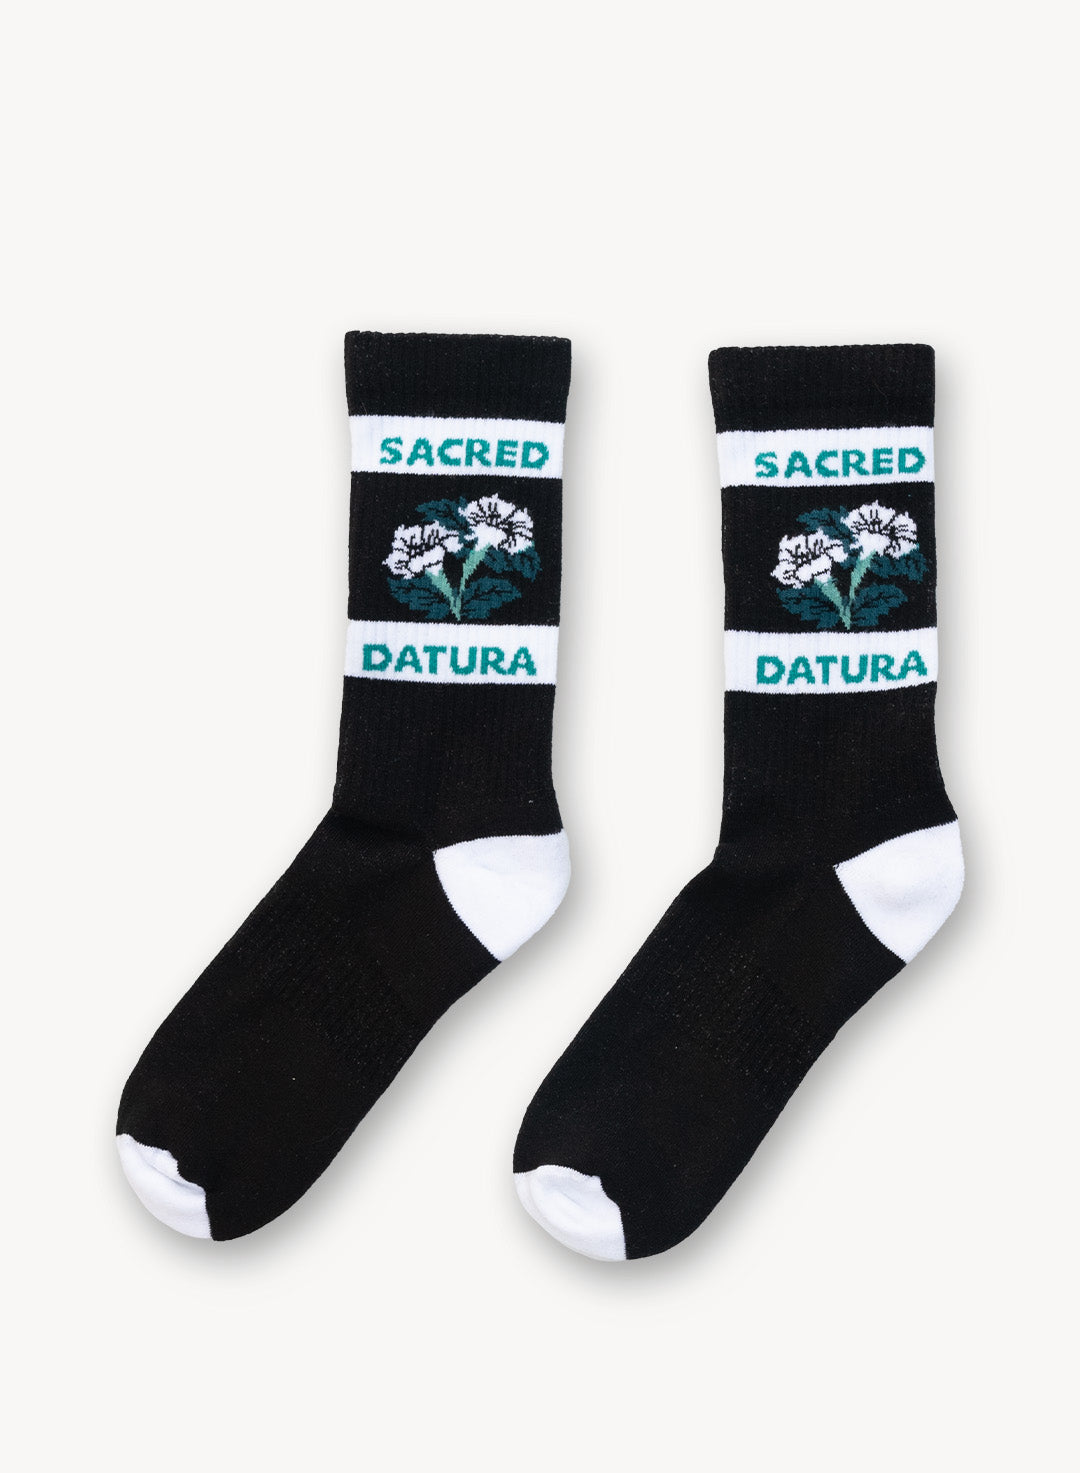 Sacred-Datura-Socks_Common.jpg